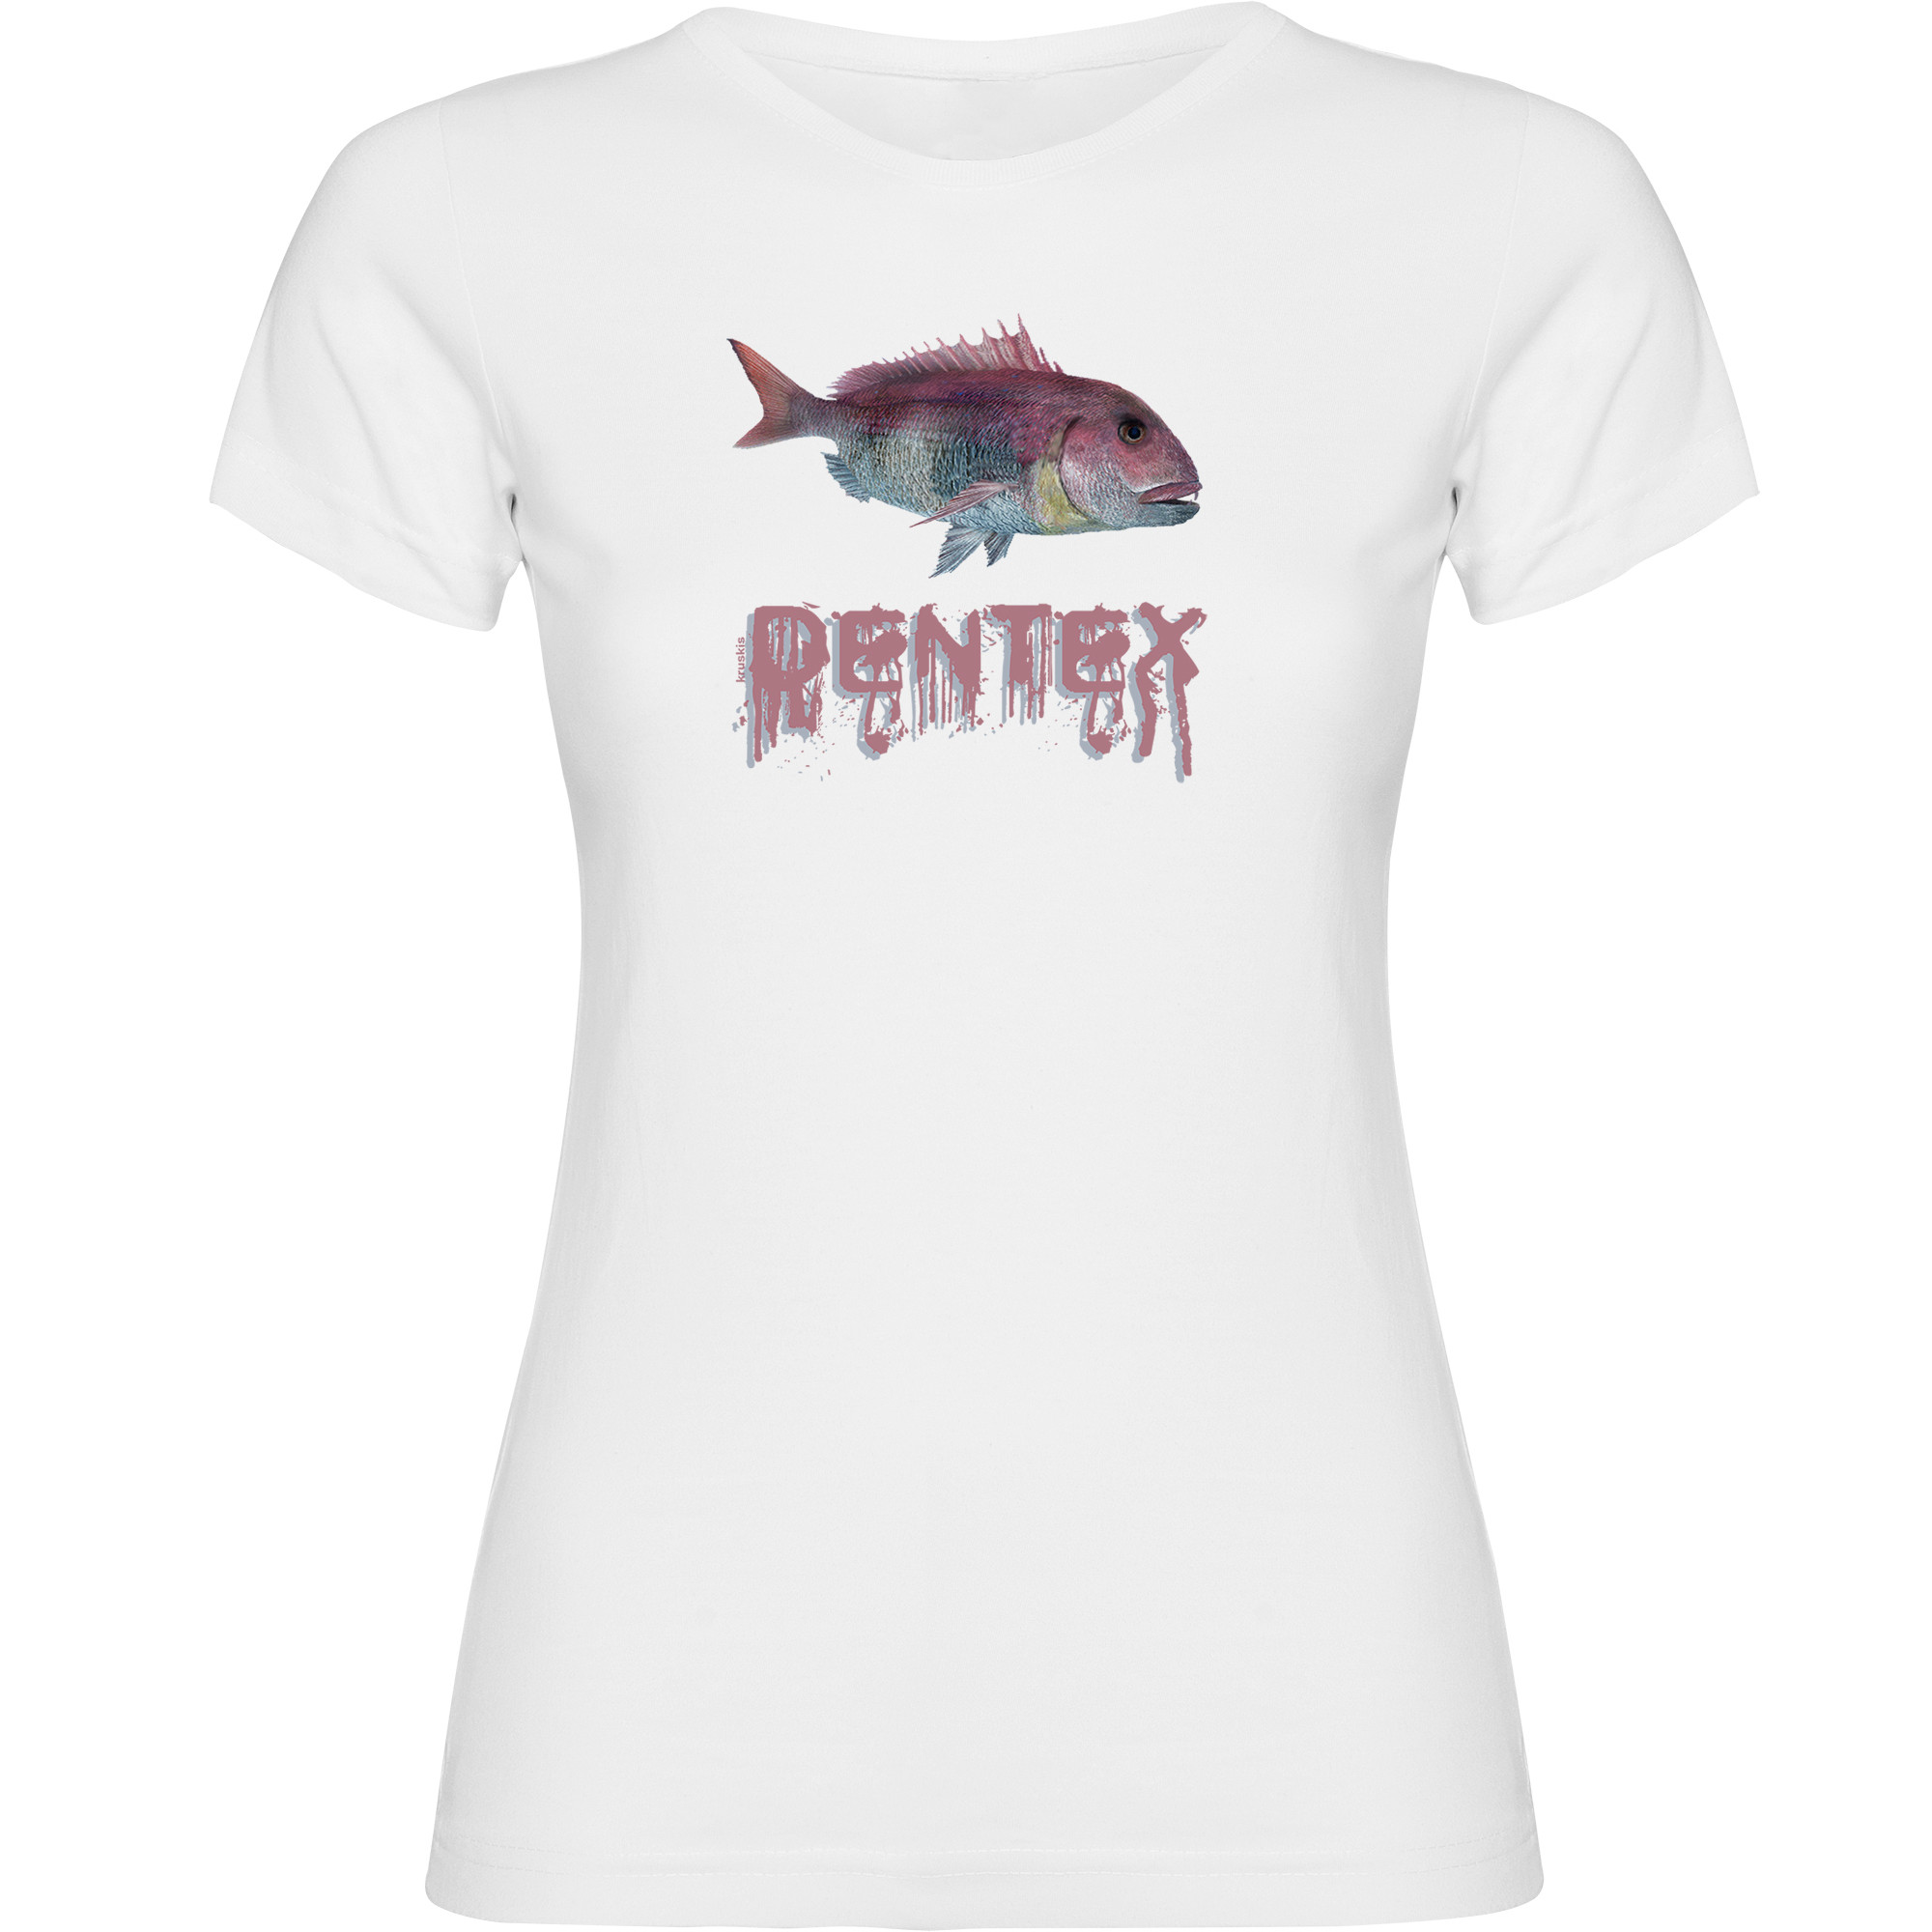 Camiseta Pesca Dentex Manga Corta Mujer